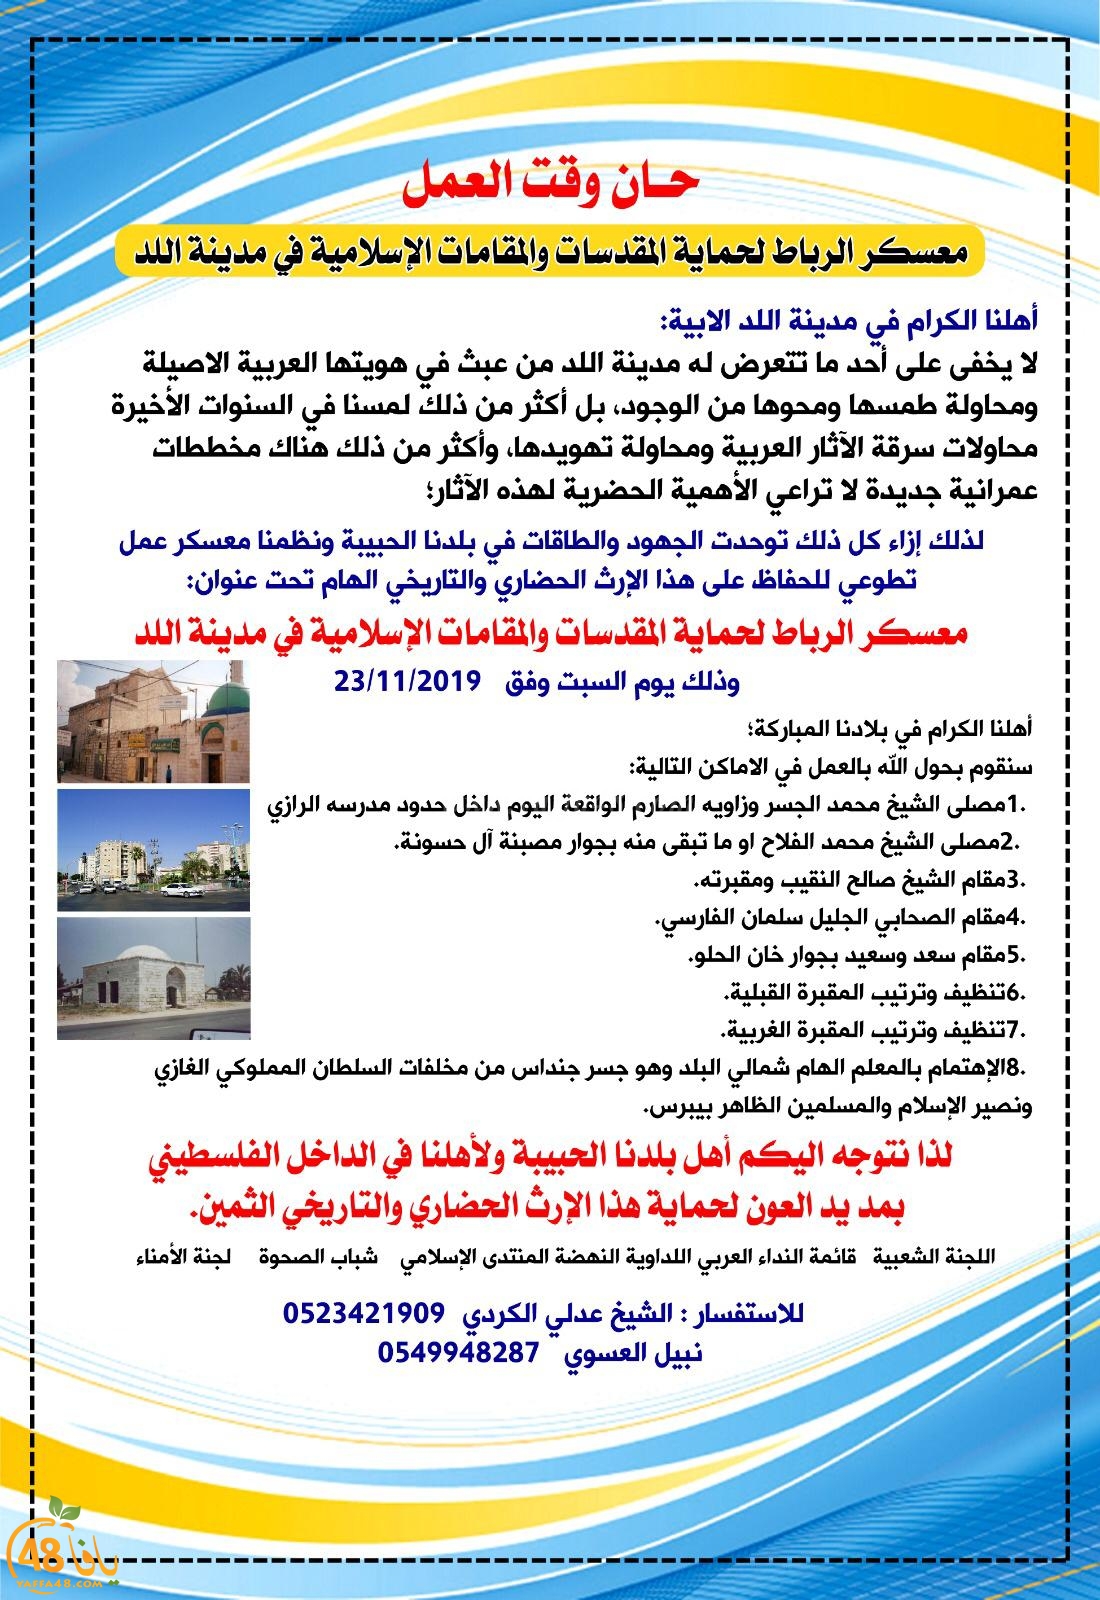 اللد: دعوة للمشاركة في معسكر الرباط للحفاظ على المقدسات الاسلامية بالمدينة